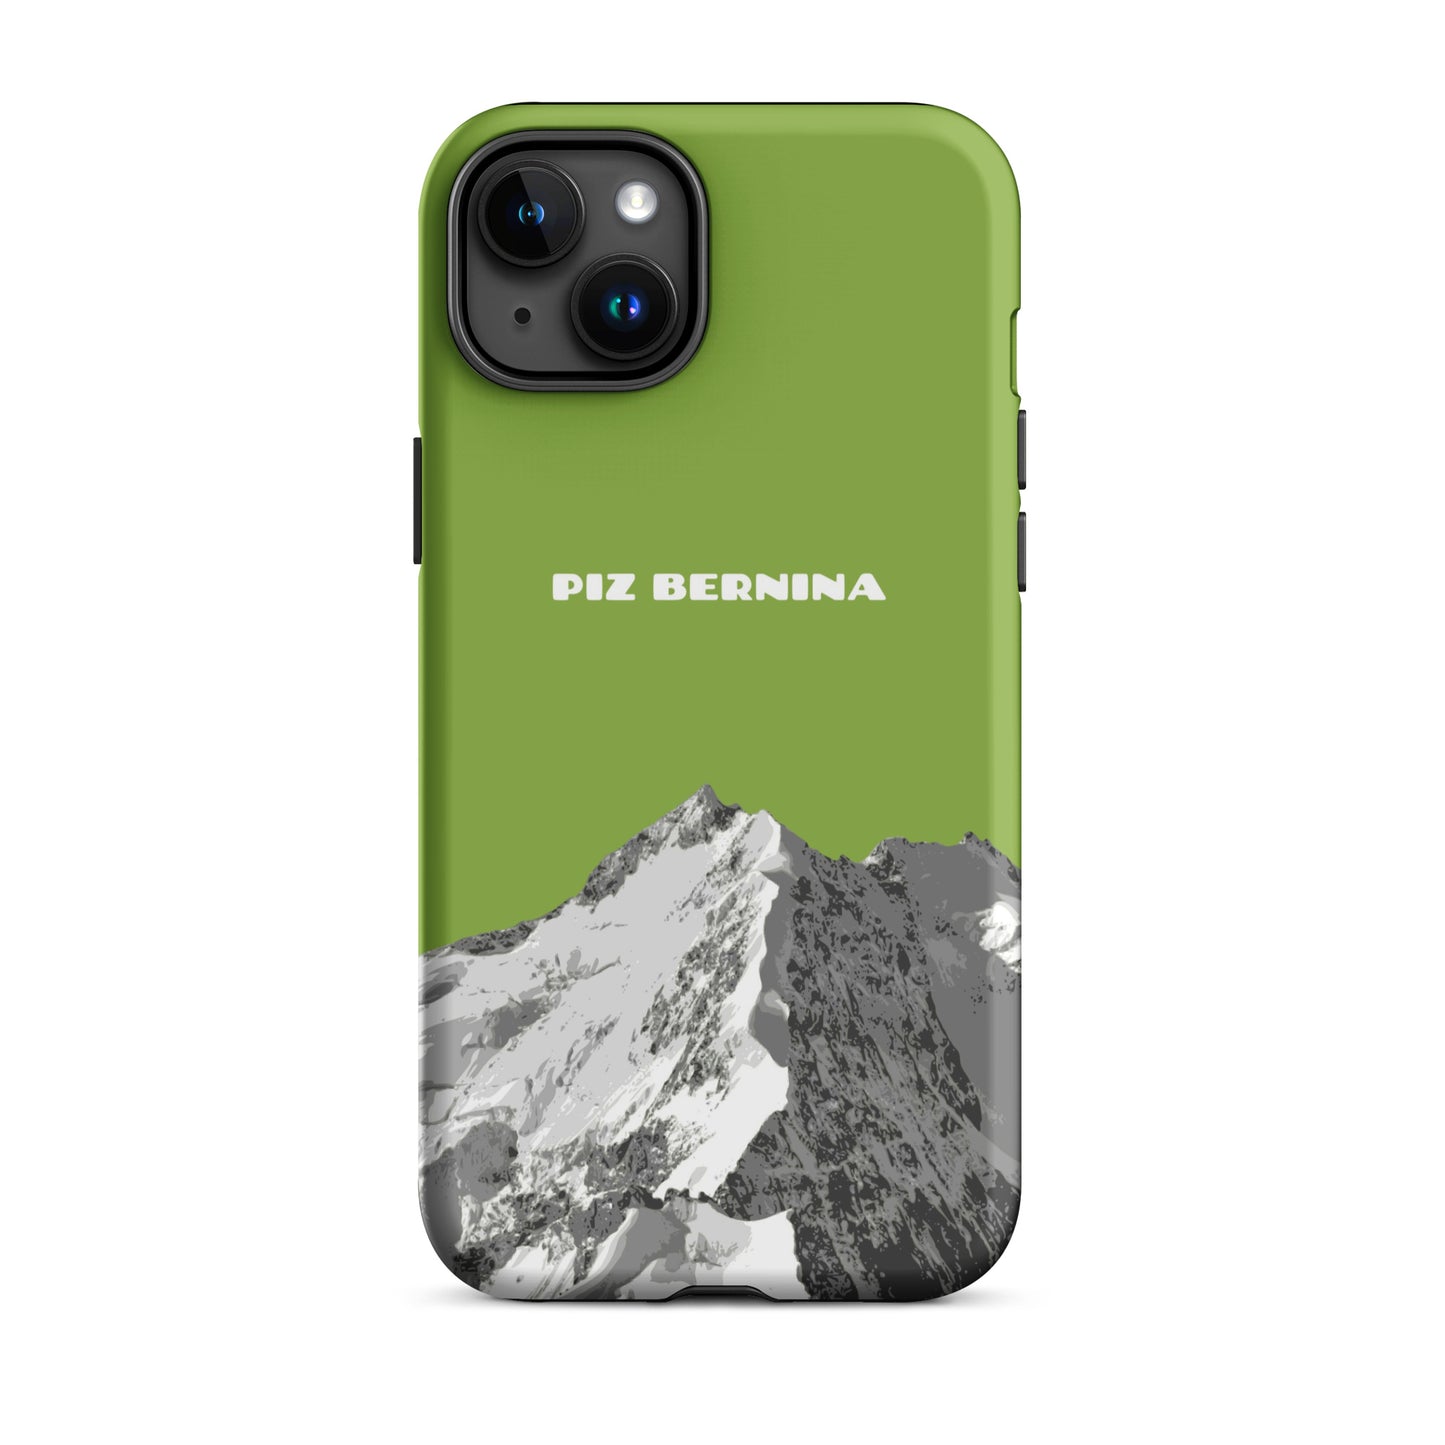 Hülle für das iPhone 15 Plus von Apple in der Farbe Gelbgrün, dass den Piz Bernina in Graubünden zeigt.